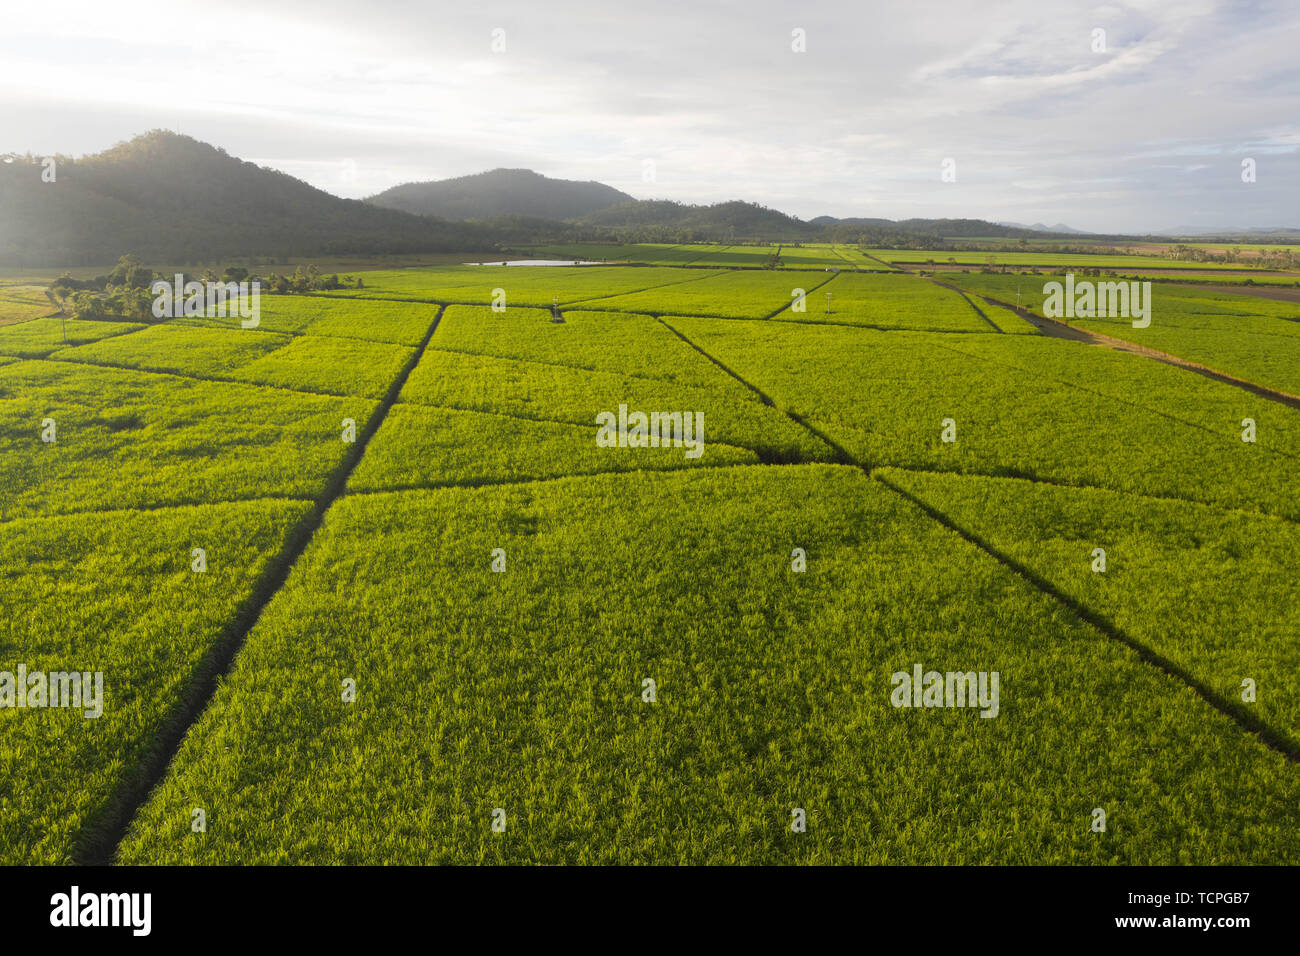 Veduta aerea le piantagioni di canne da zucchero agriculutural paesaggio tropicale nel paese delle meraviglie con le montagne sullo sfondo e il percorso dei campi inbtween Foto Stock